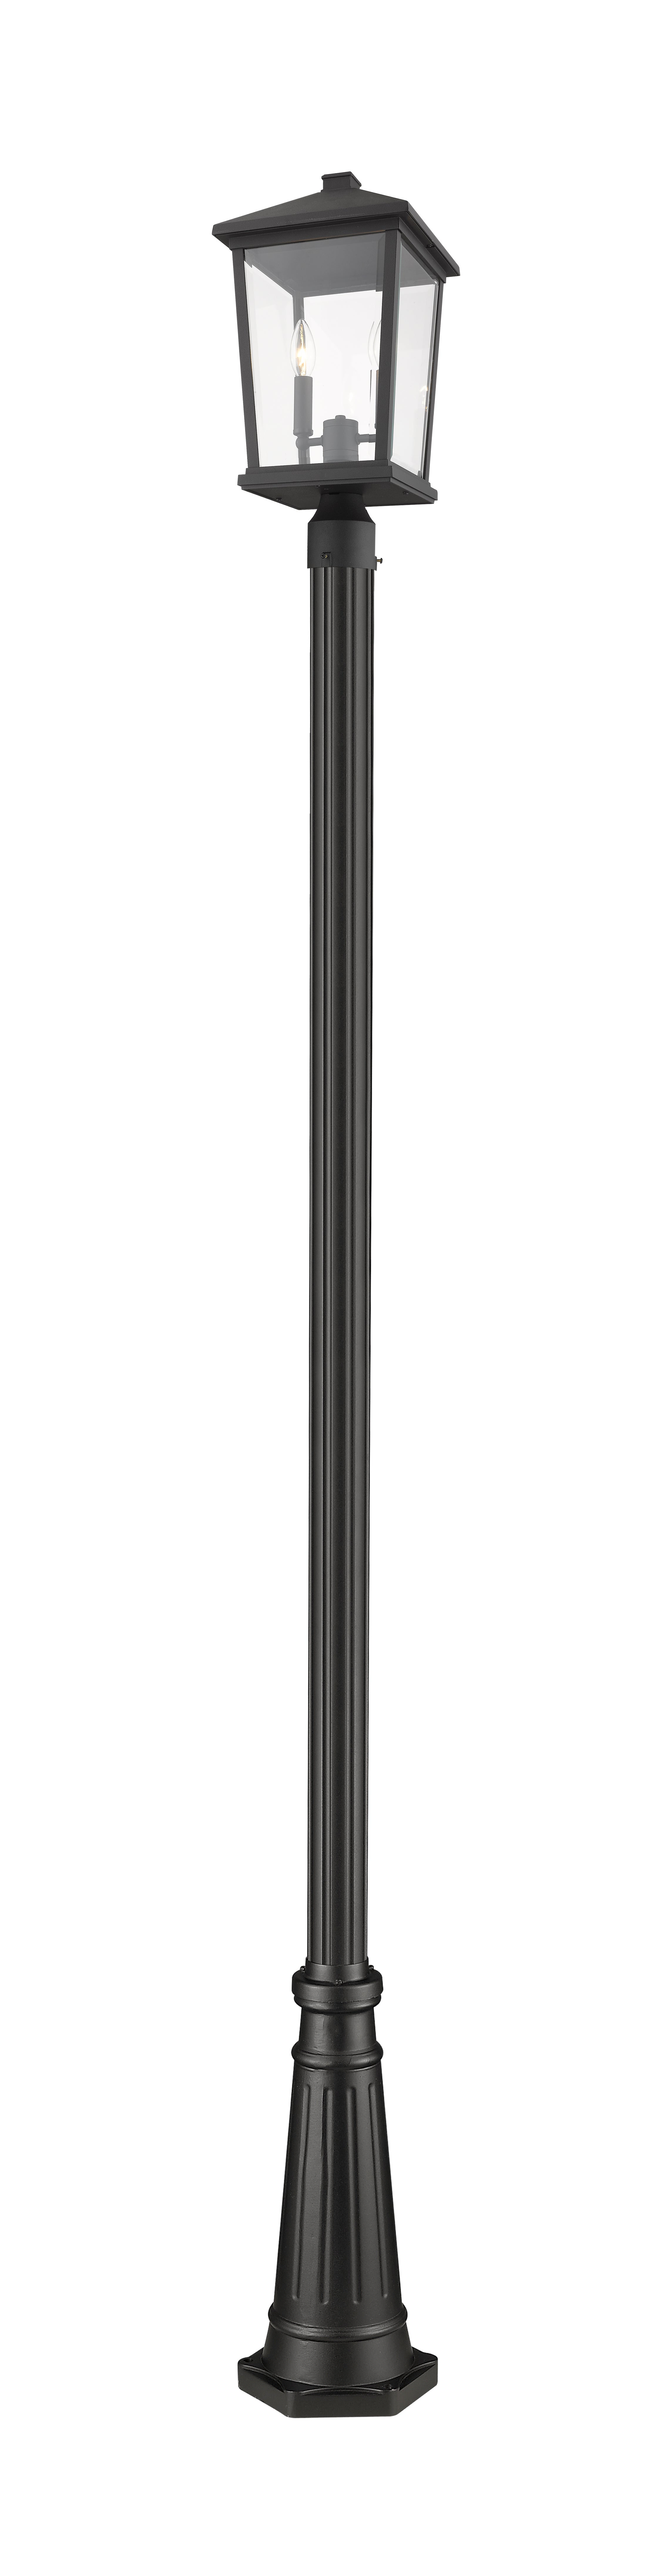 BEACON Luminaire sur poteau Noir - 568PHBR-519P-BK | Z-LITE